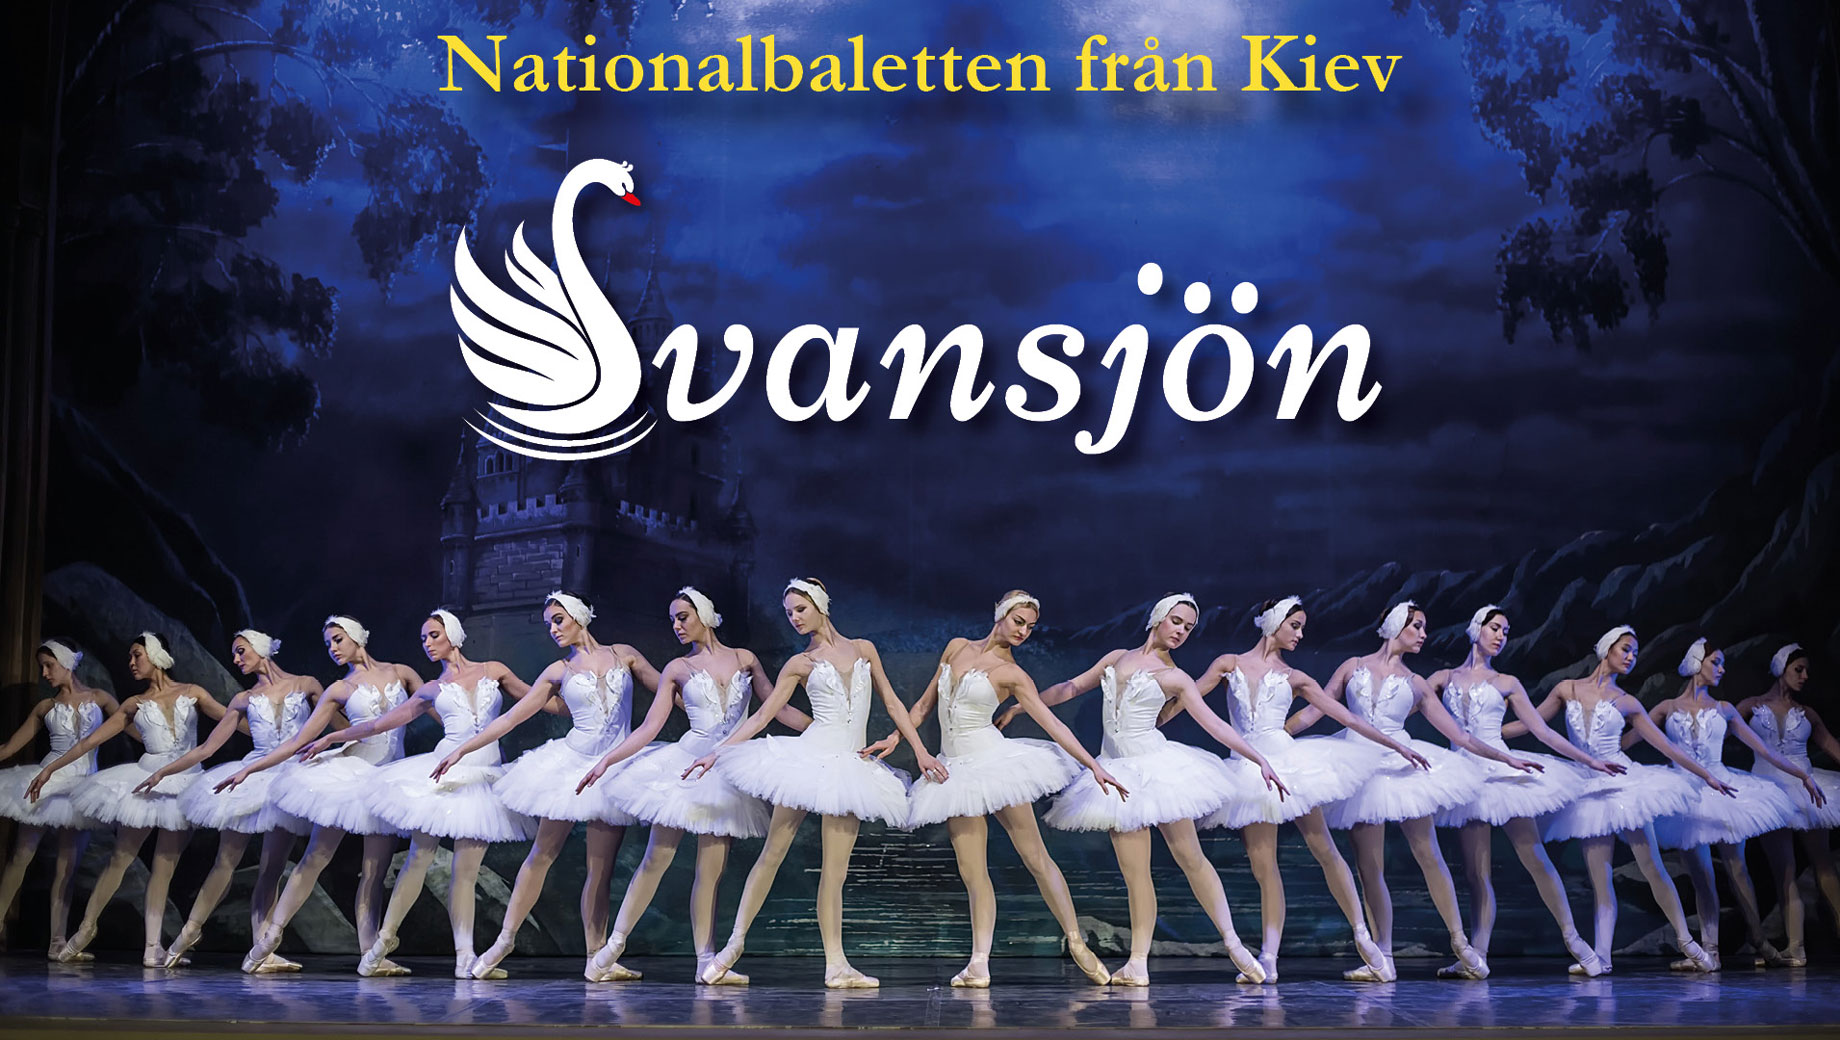 Svansjön - Nationalbaletten från Kiev